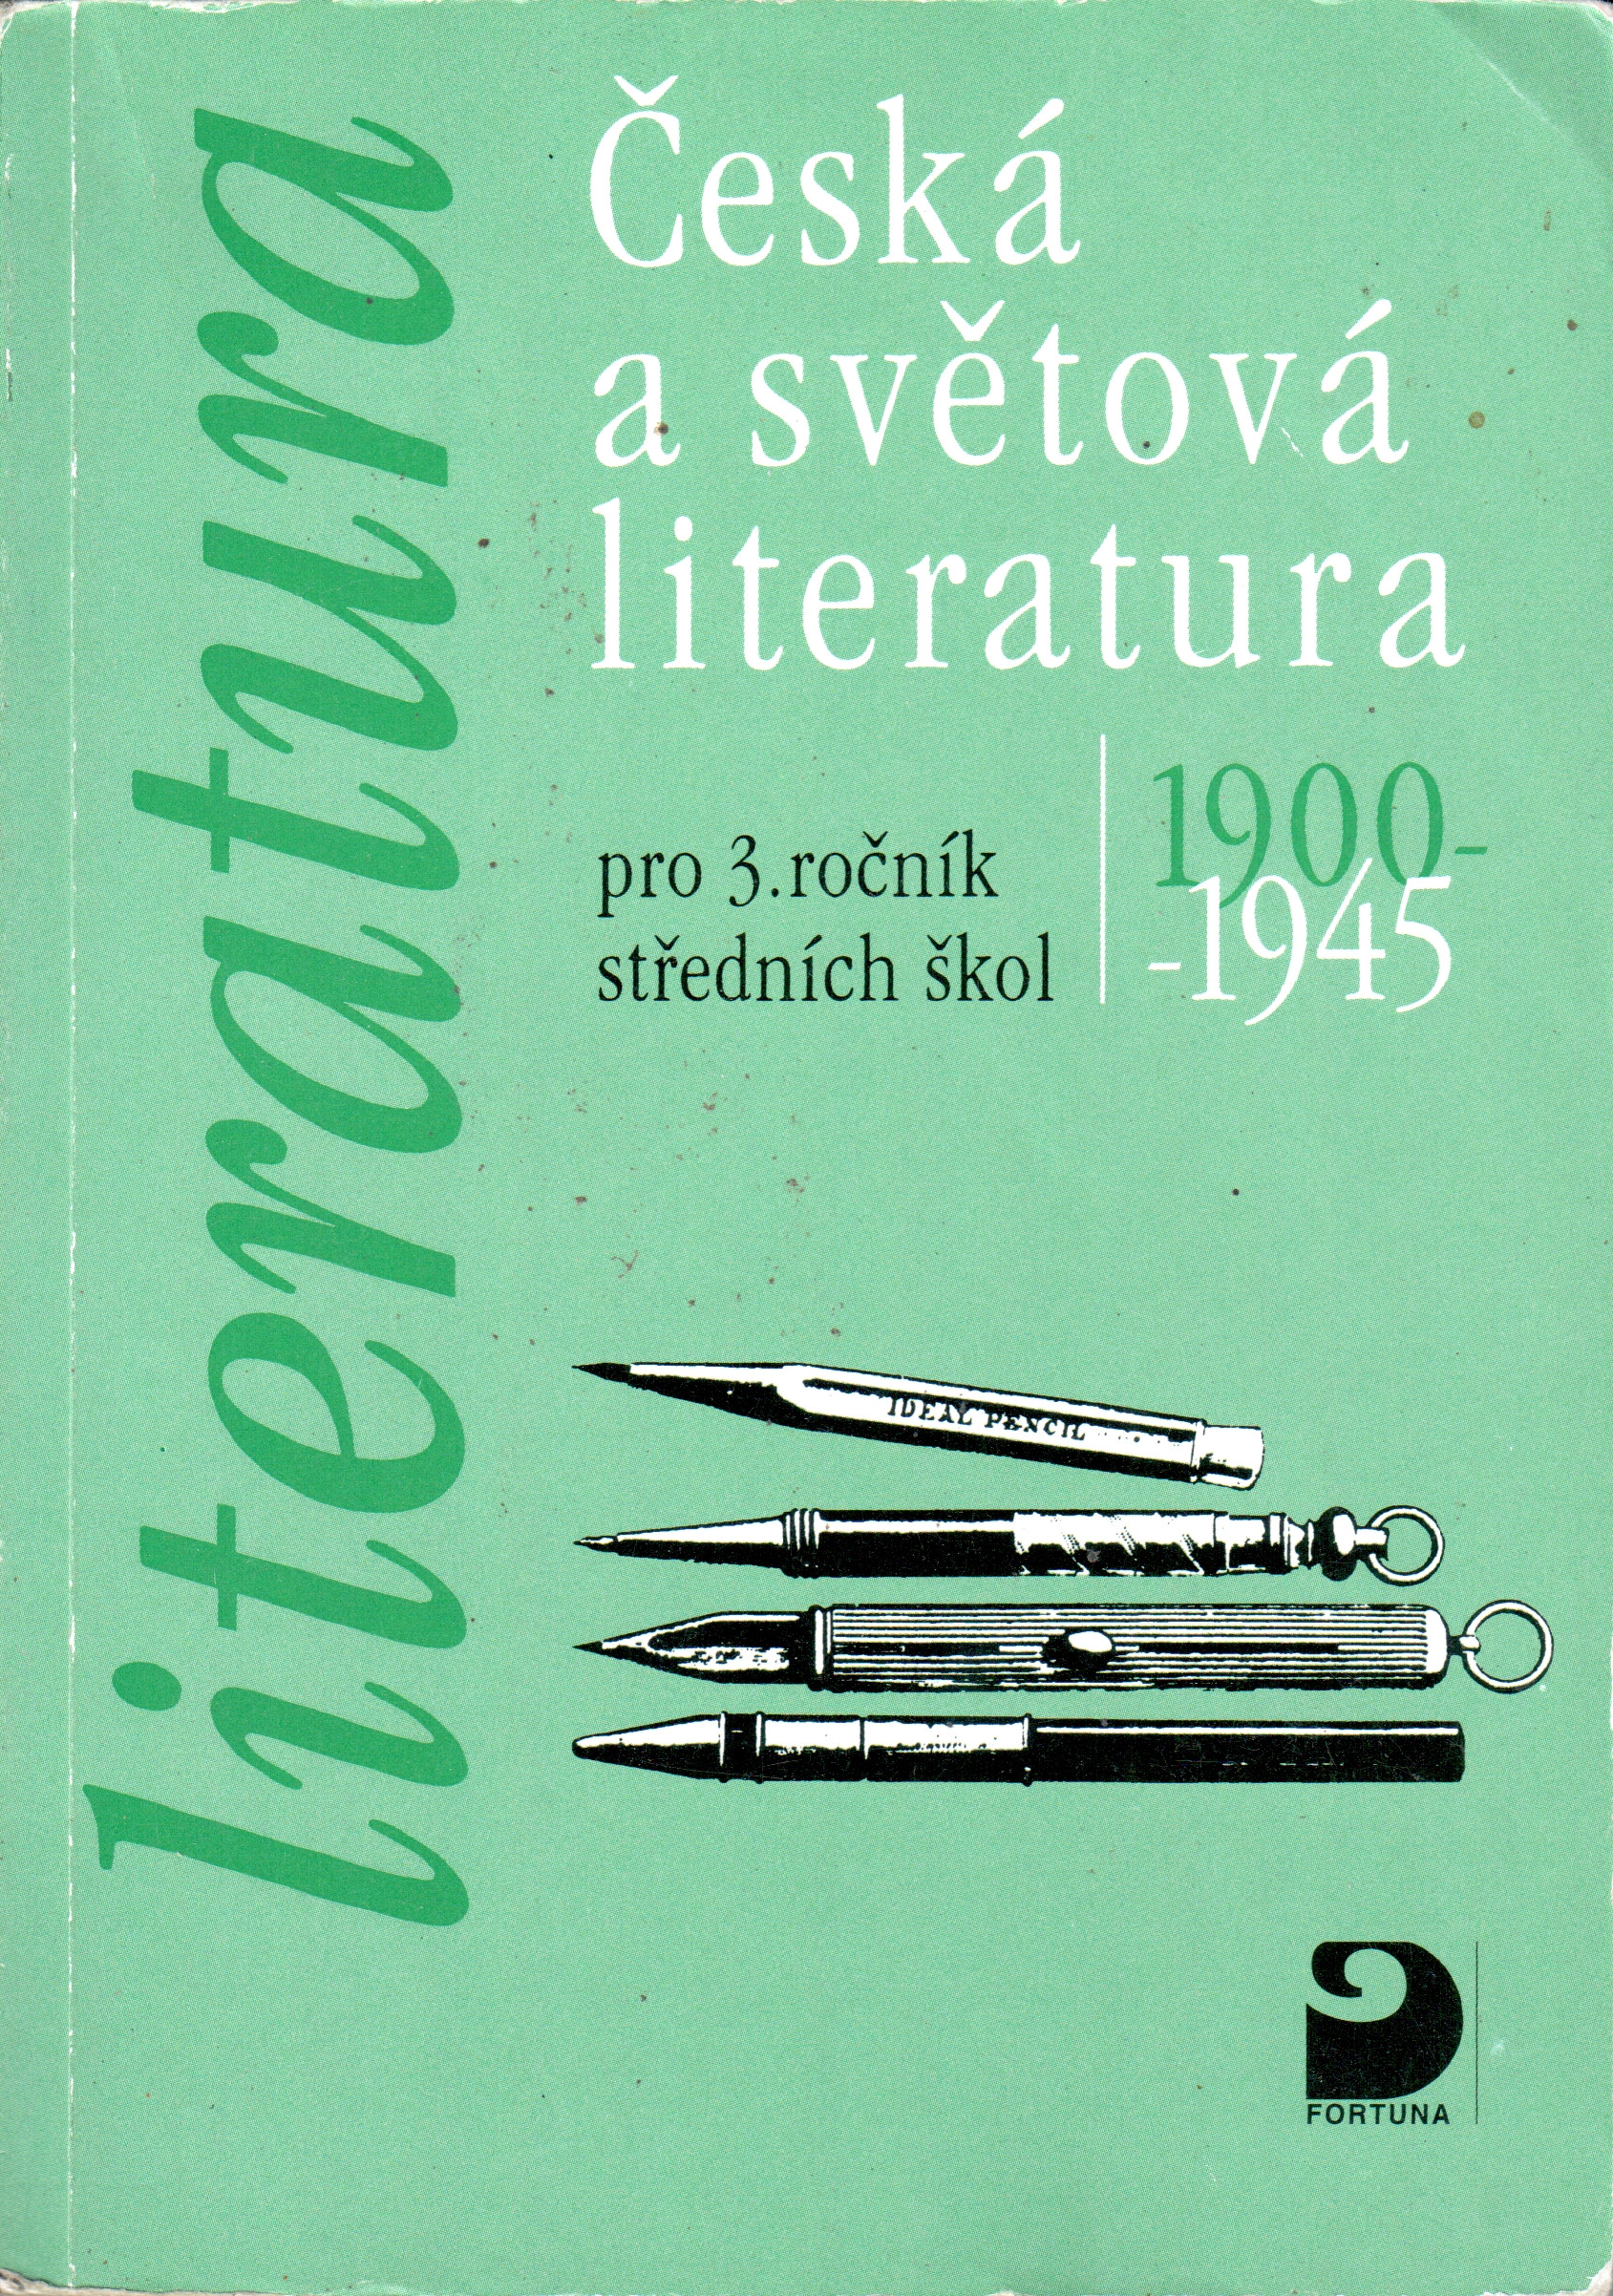 Česká a světová literatura pro 3. ročník středních škol (1900-1945) - Náhled učebnice